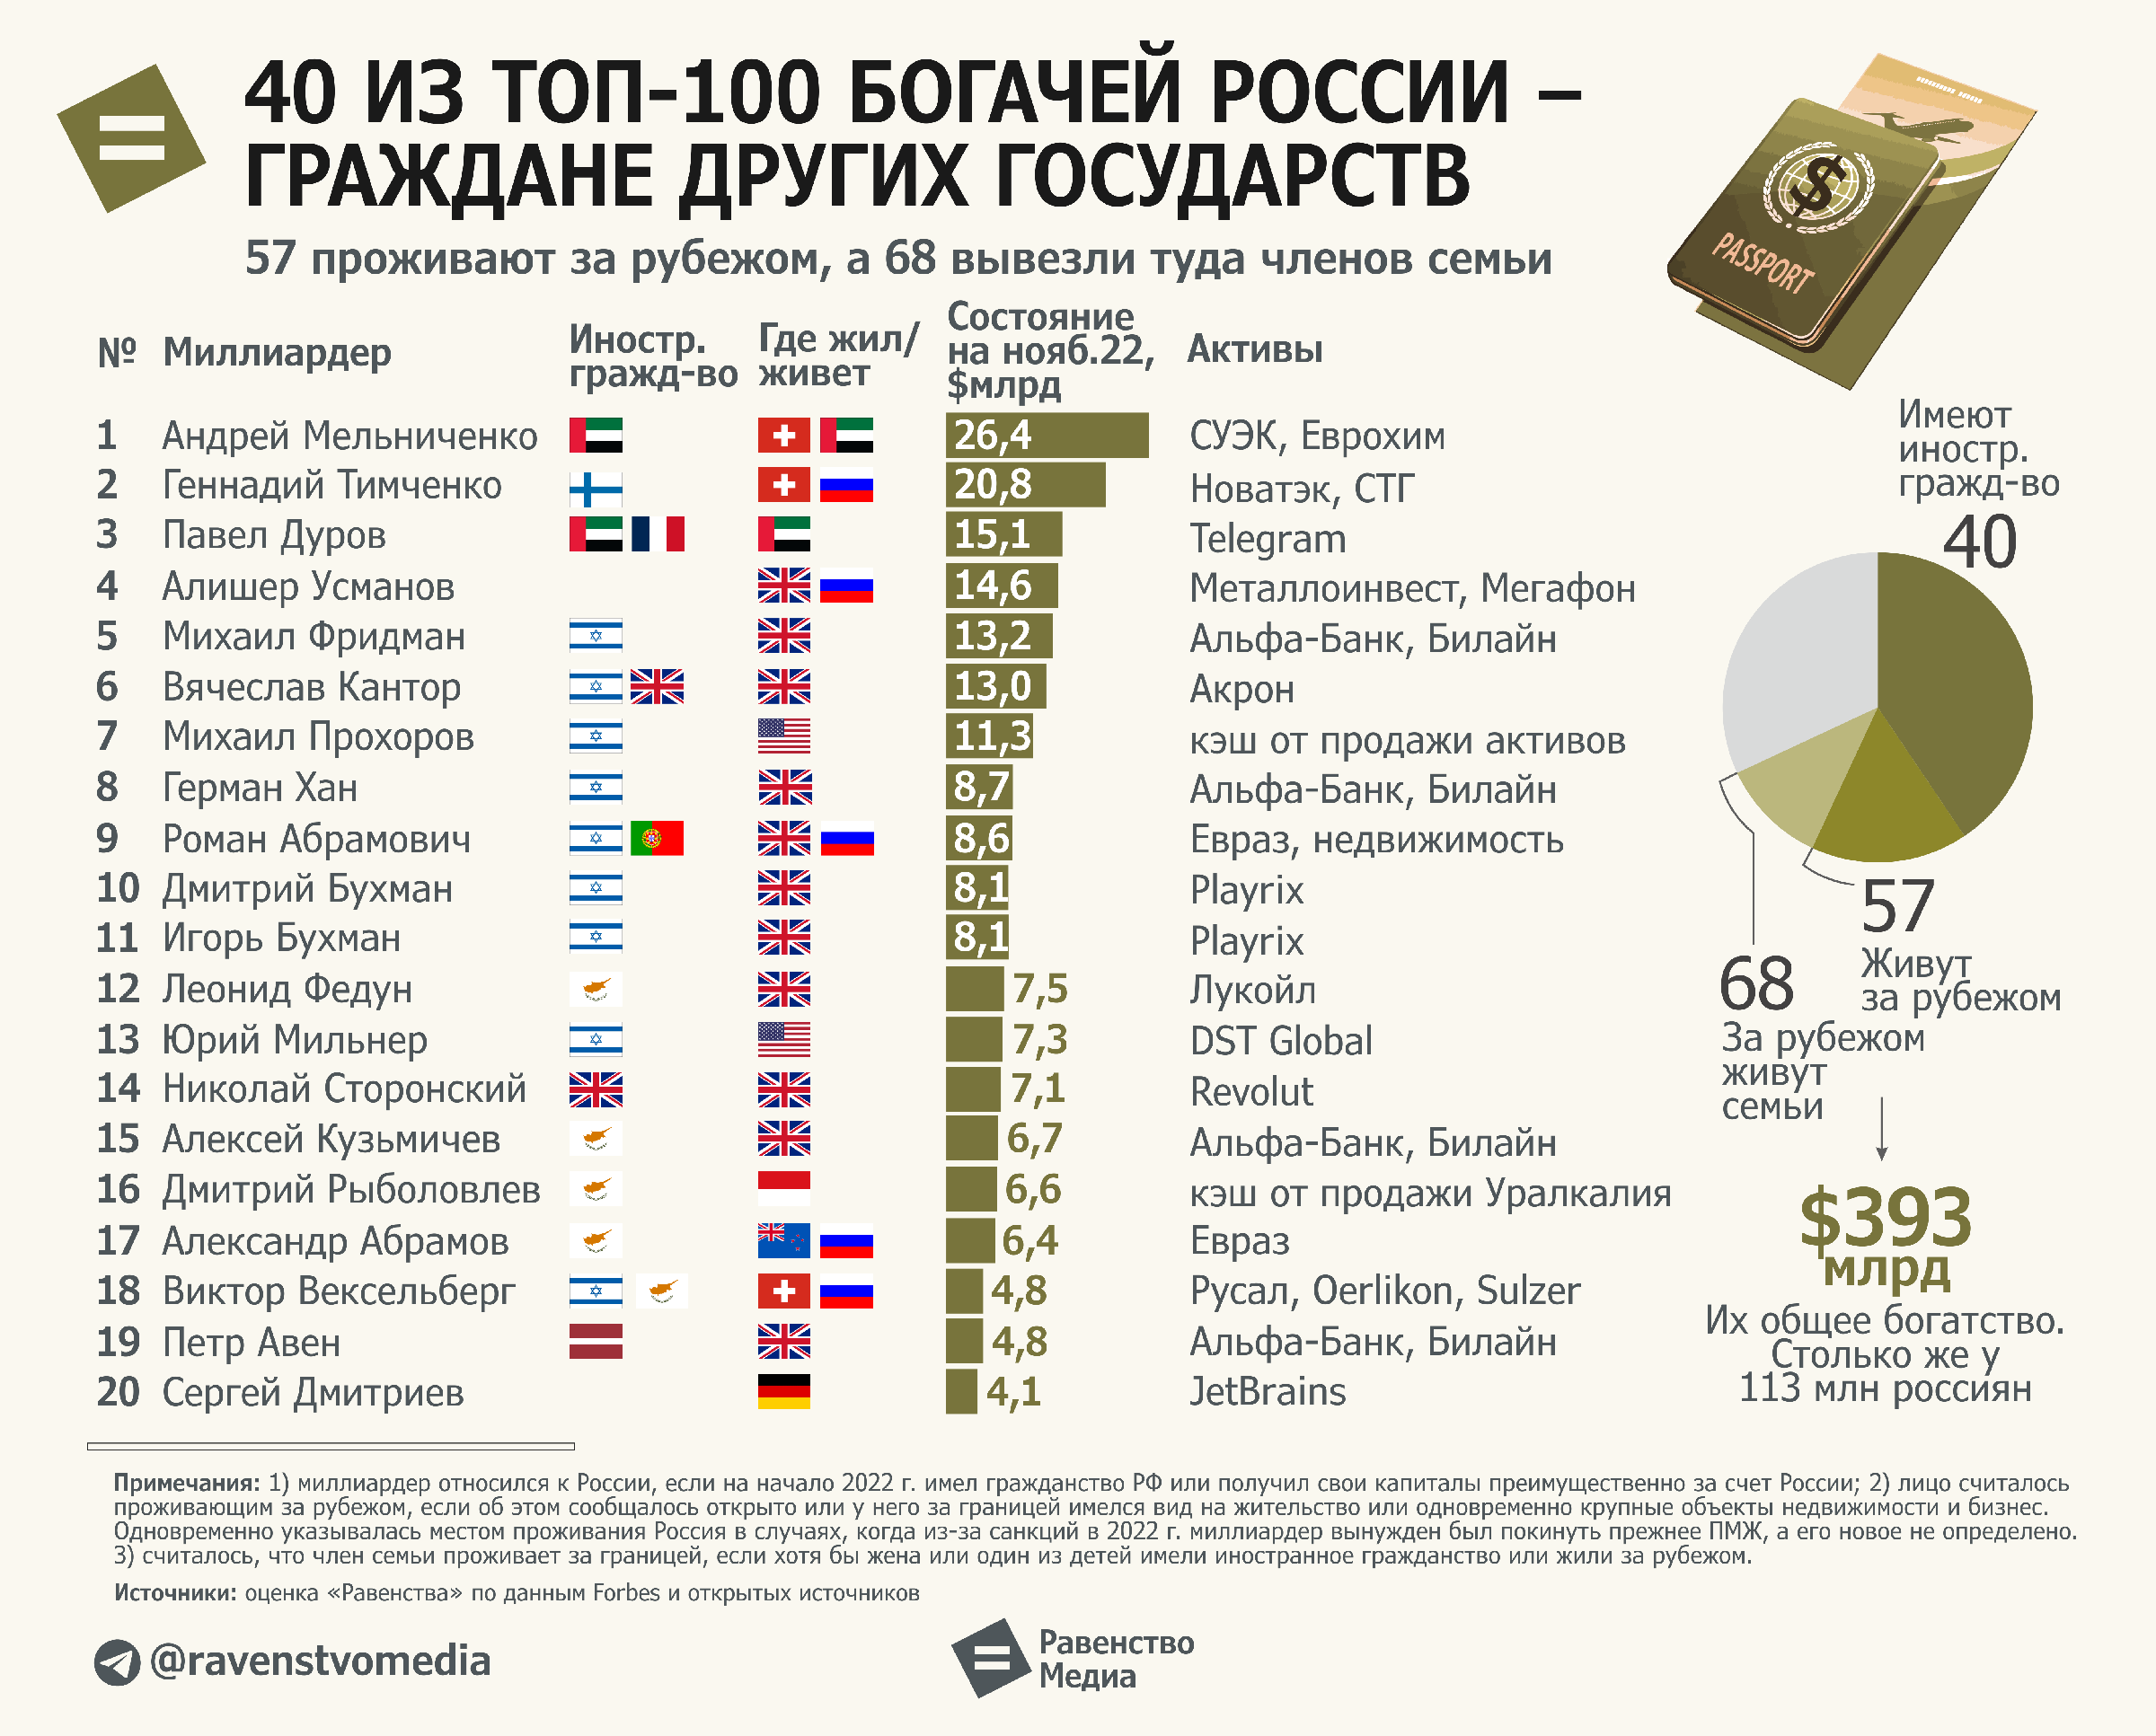 Как жить в 2023 году. Миллиардеры России топ 100. Топ лучших стран. Миллиардеры России 2022. Российские миллиардеры.